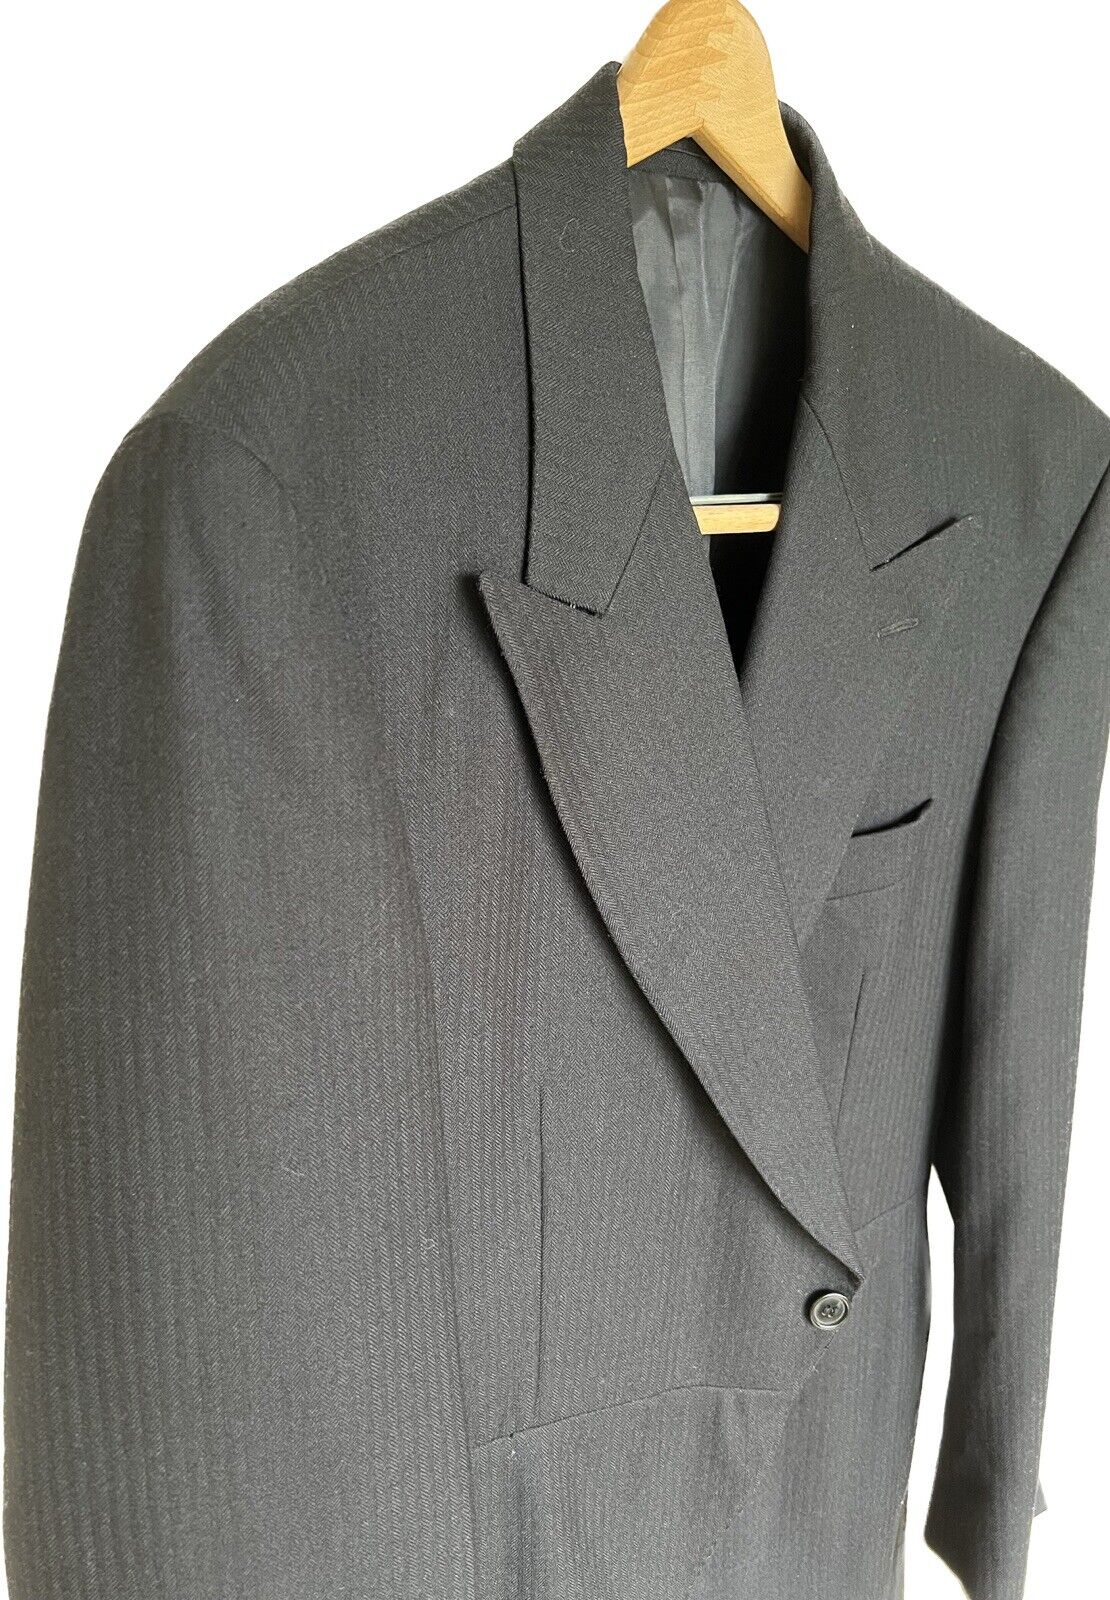 1950’s Men’s Herringbone Wool Cutaway Jacket Size… - image 2